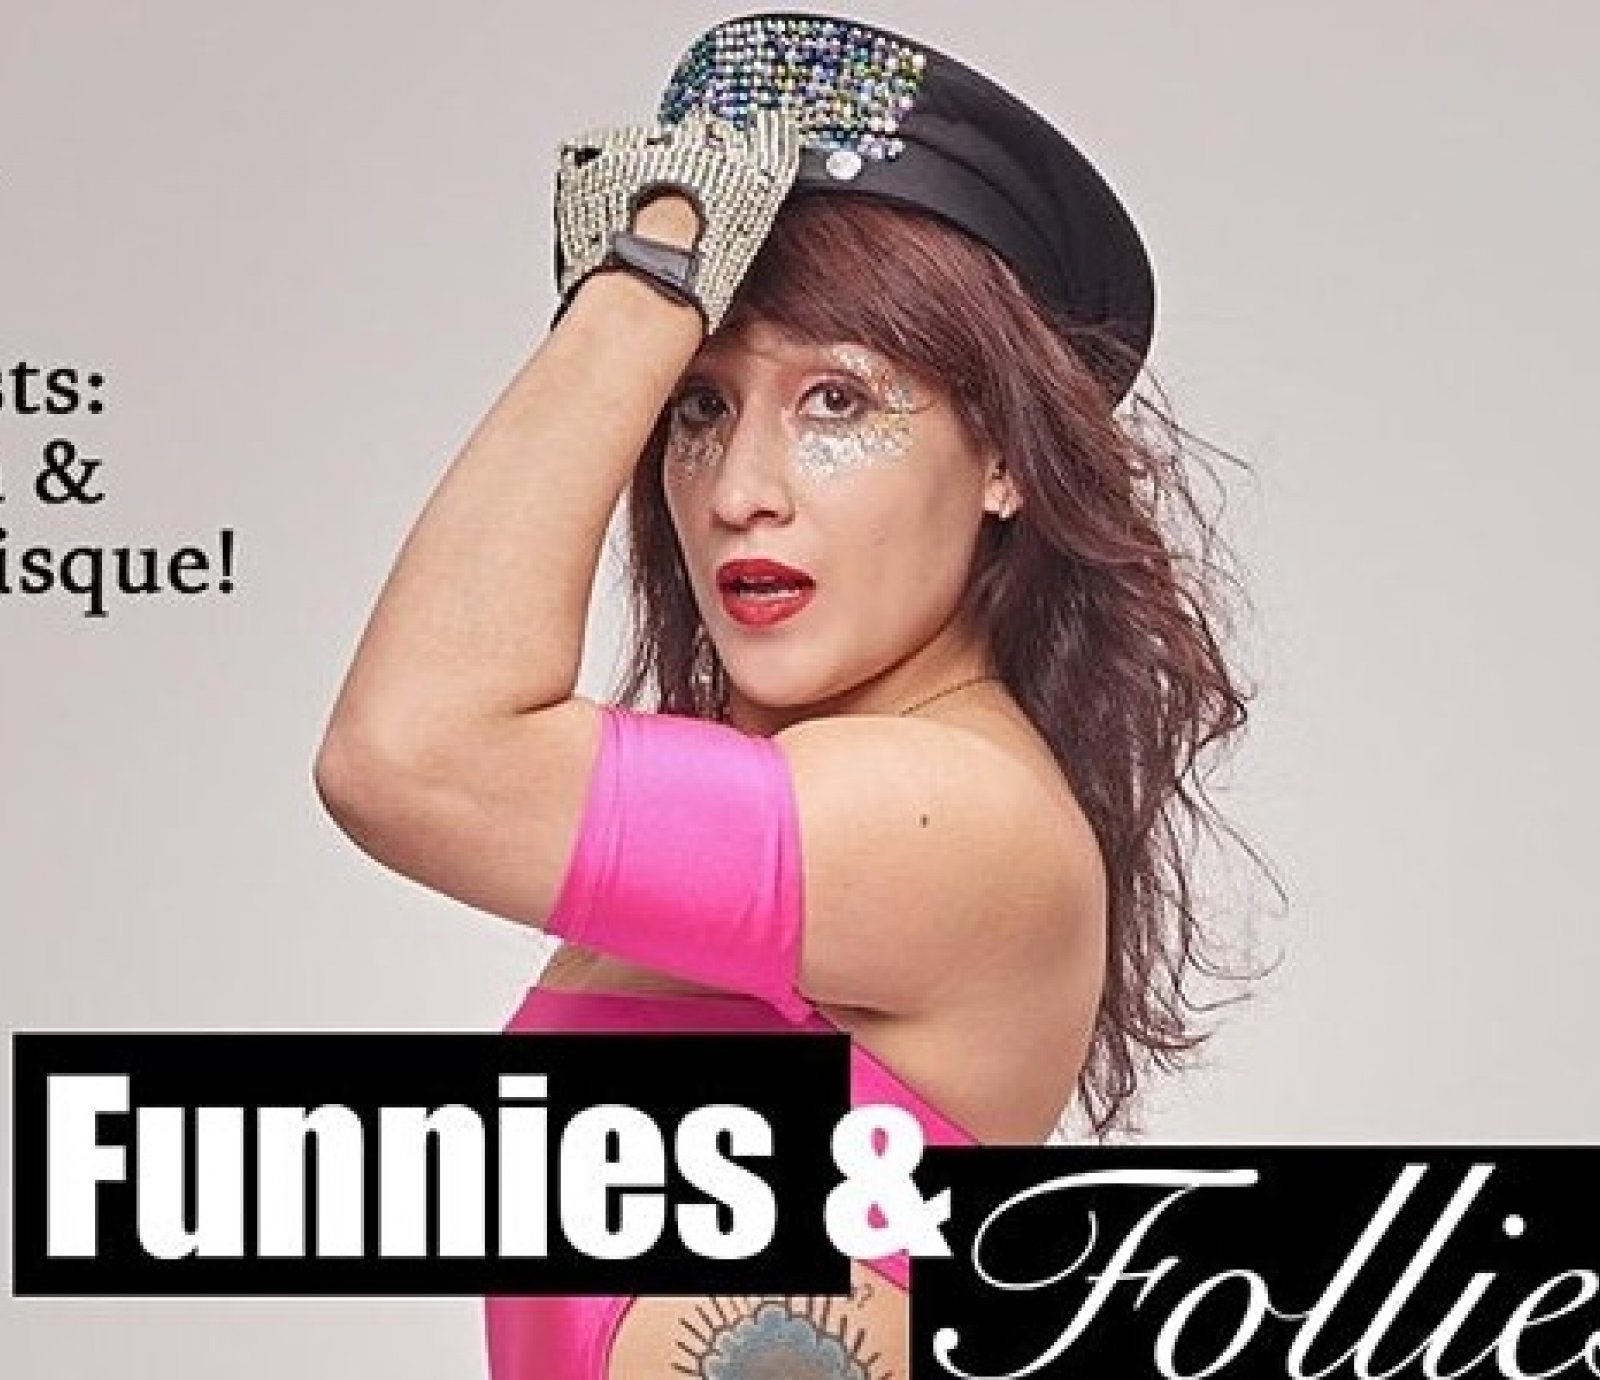 FUNNIES & FOLLIES "Comedy & Burlesque"